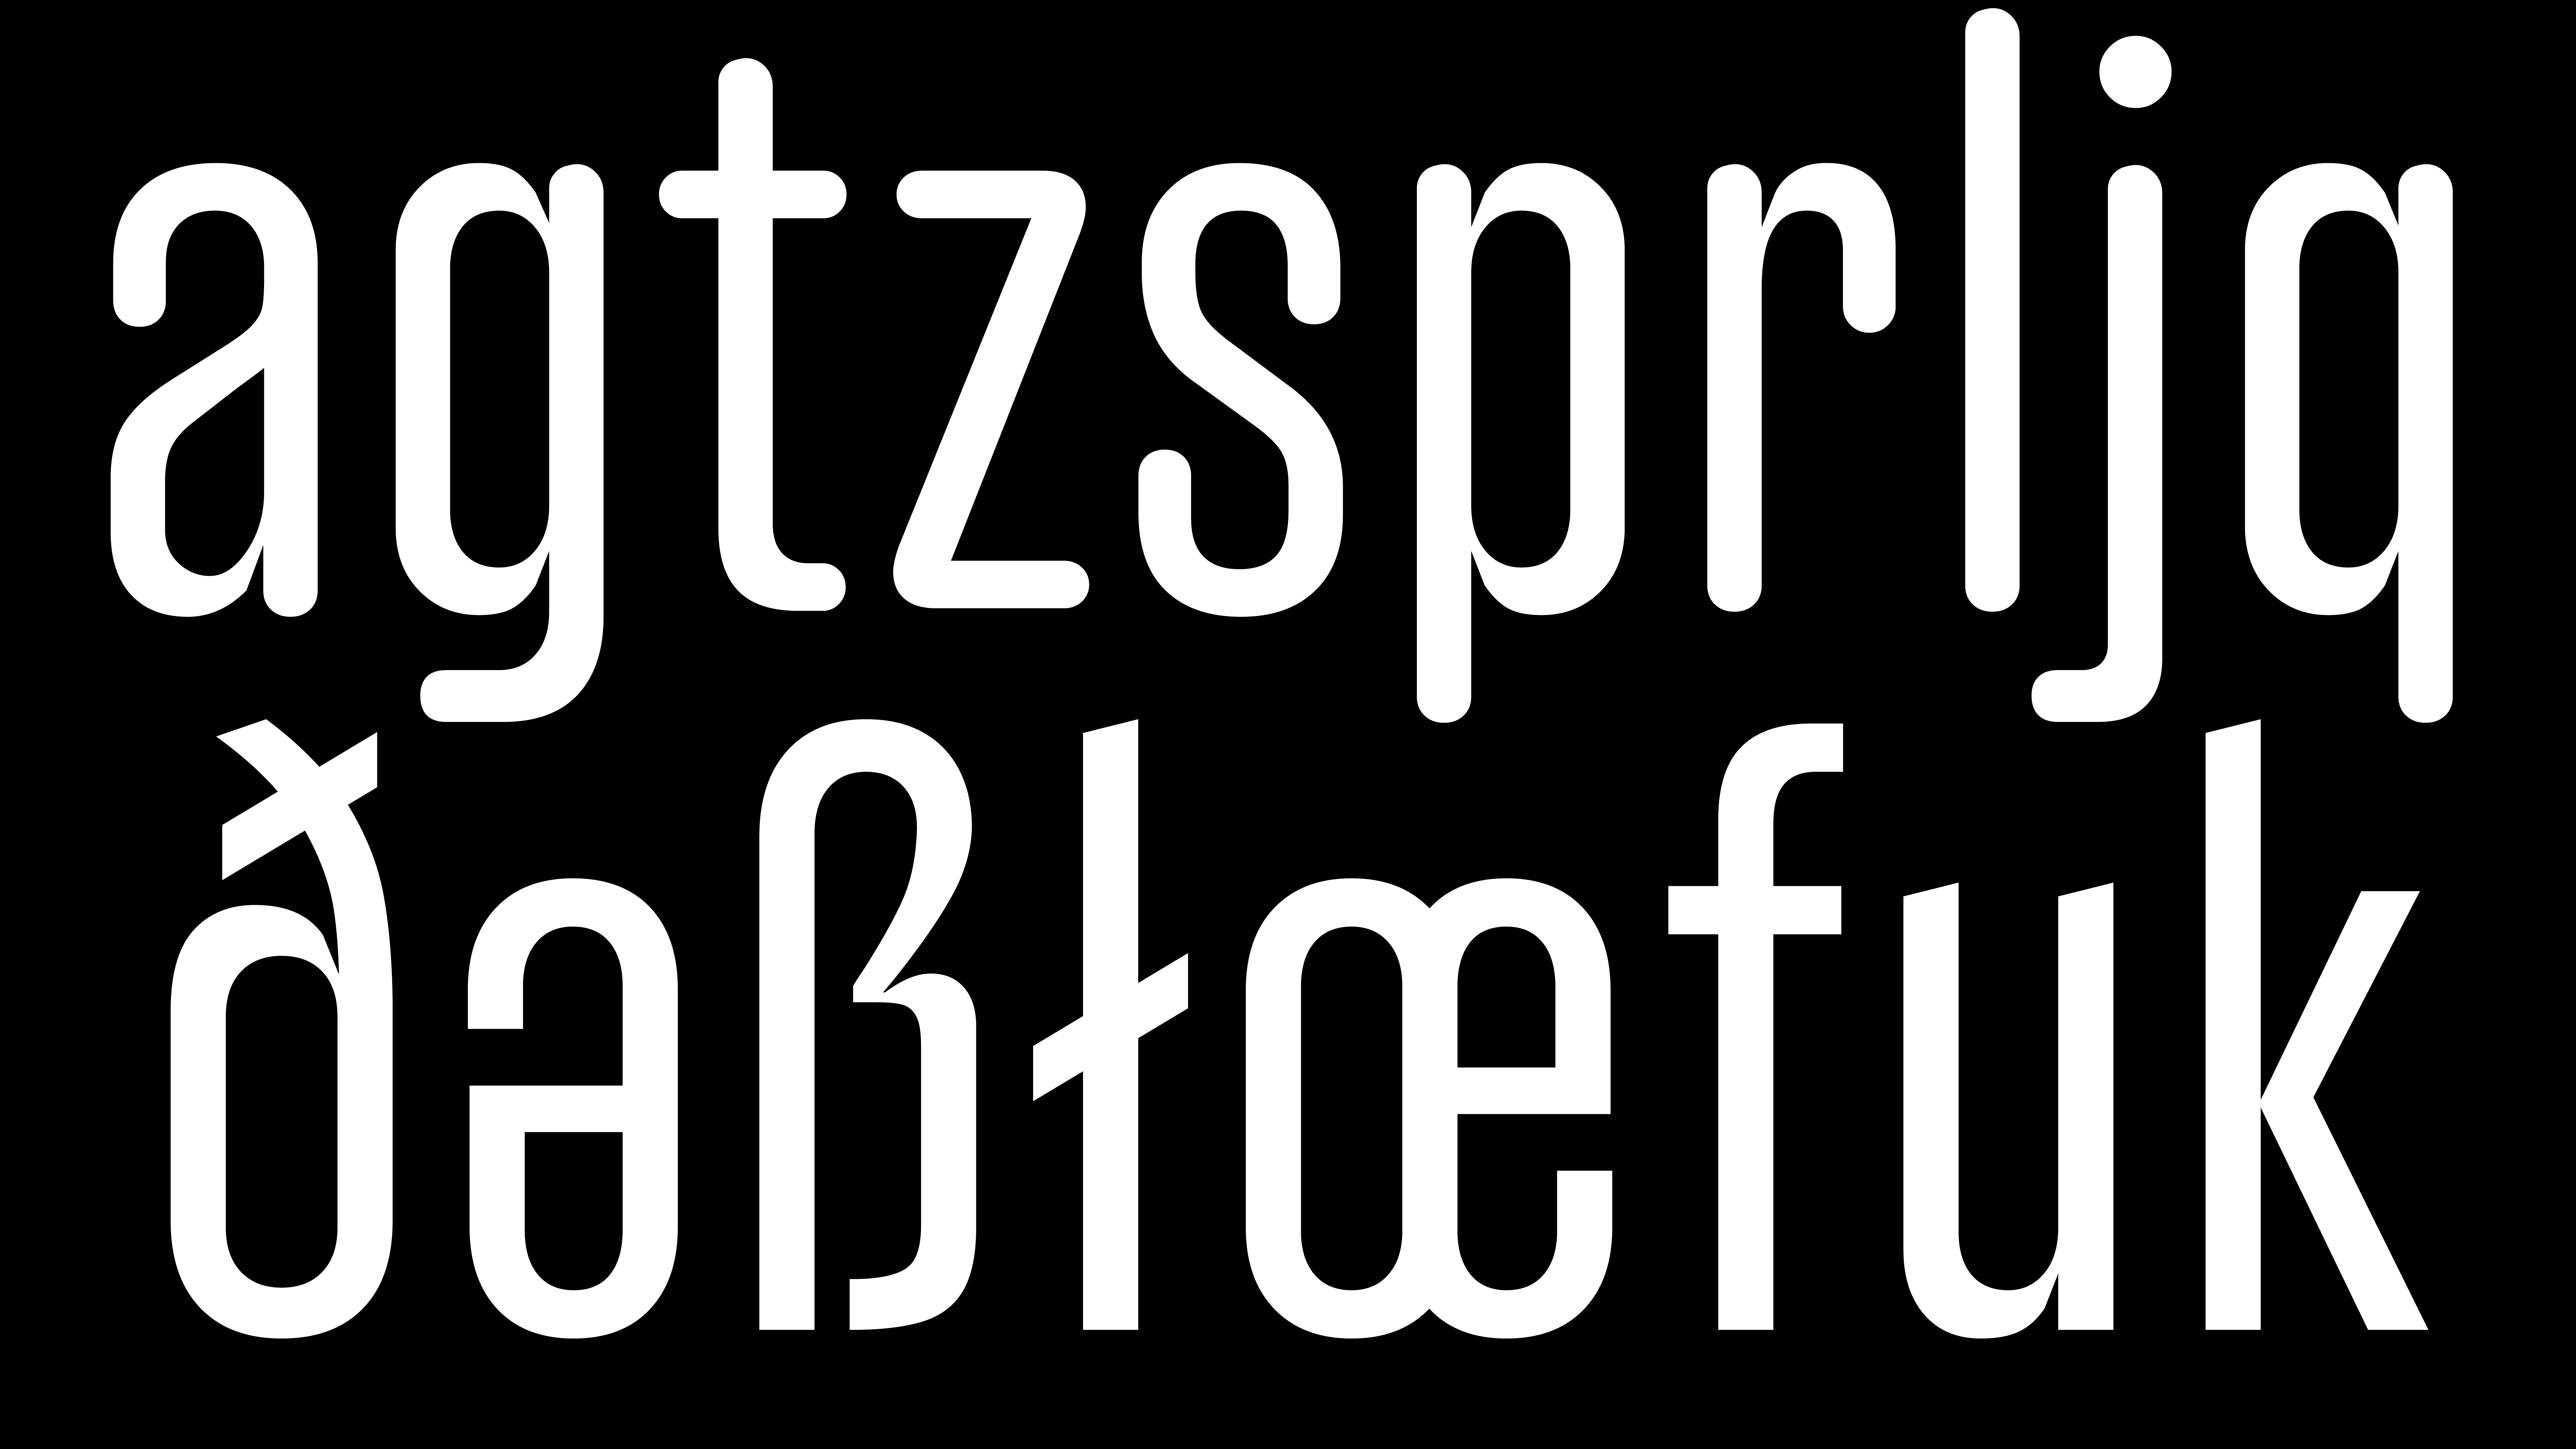 Hop Typeface